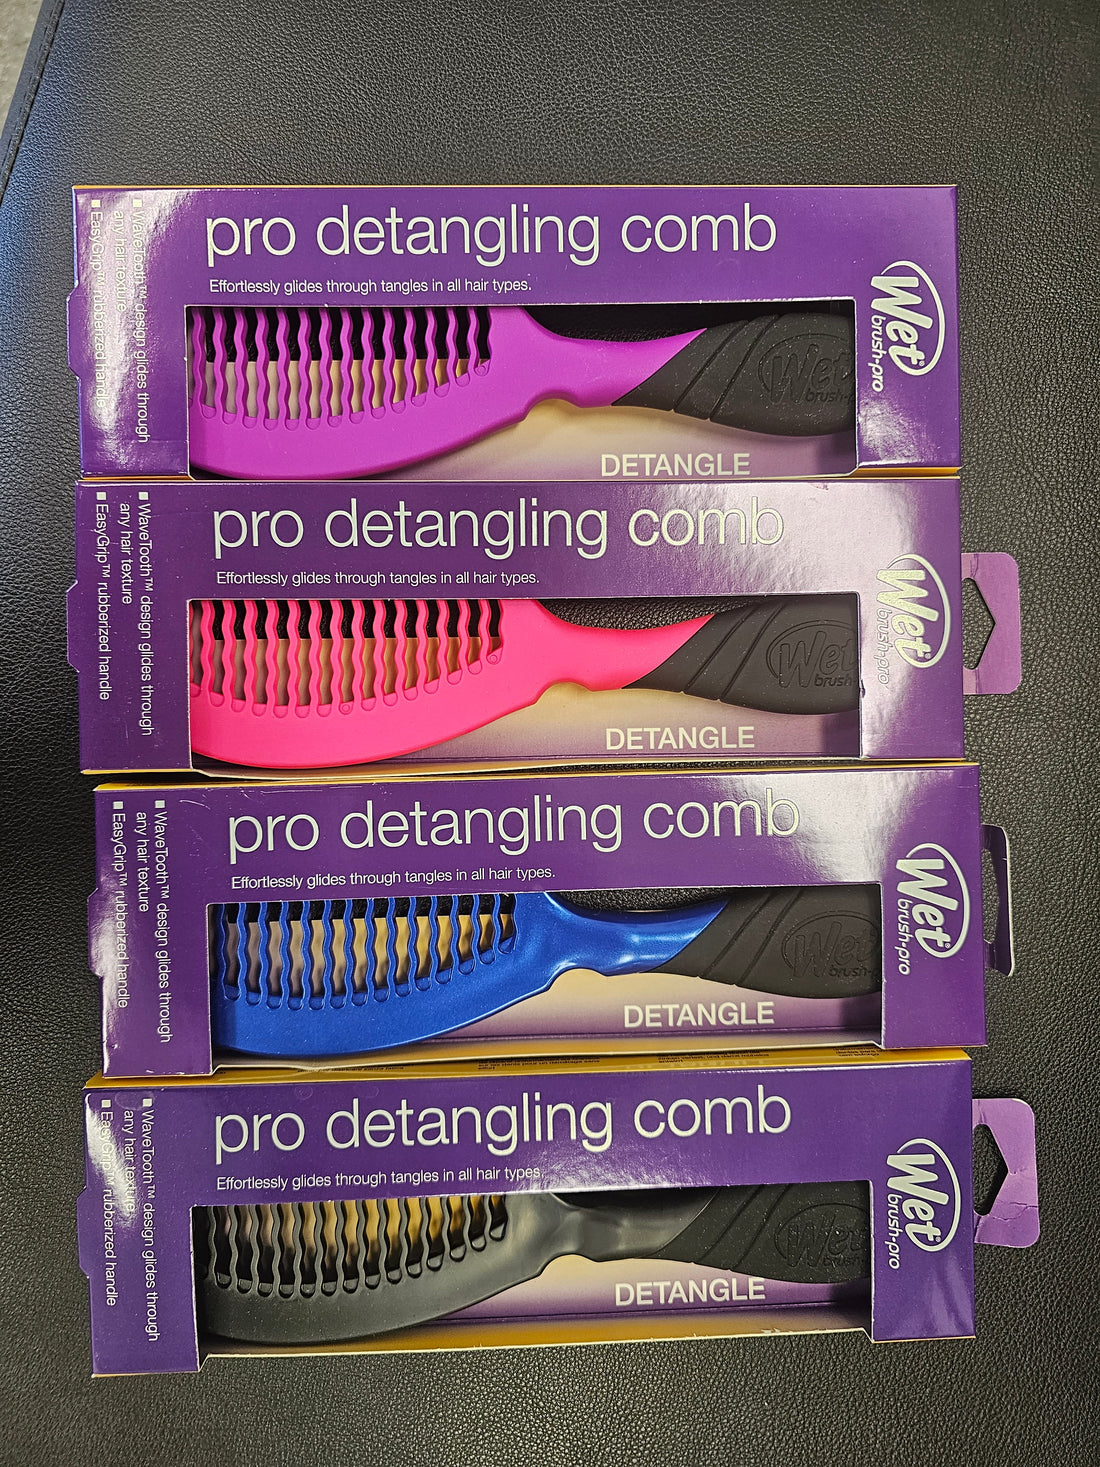 Wet Brush Comb